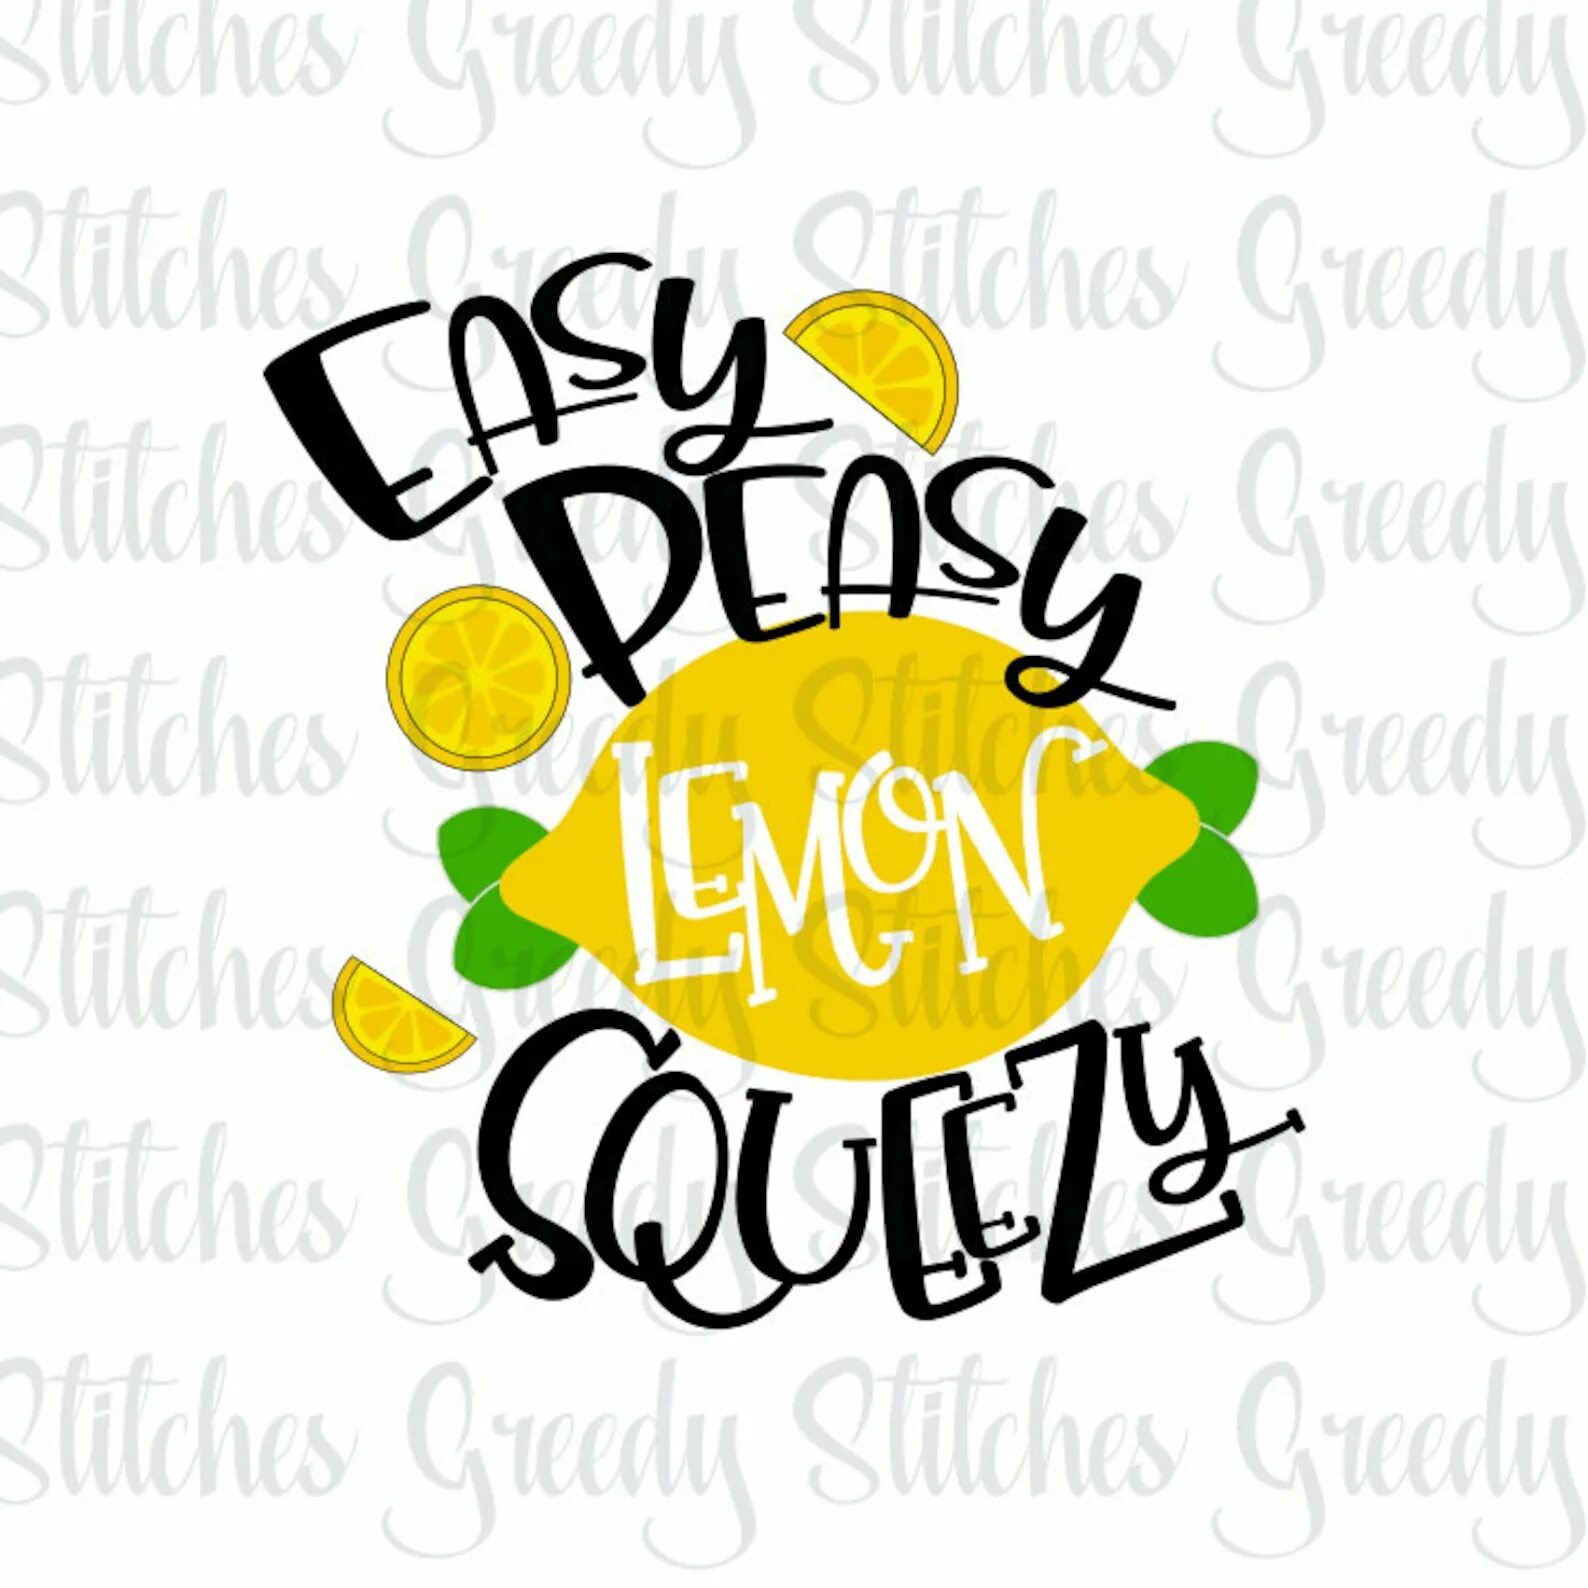 Easy peasy lemon. Peasy Lemon Squeezy. Easy Peasy. ИЗИ пищи Лаймон сквизи. Перевести easy Peasy Lemon Squeezy.